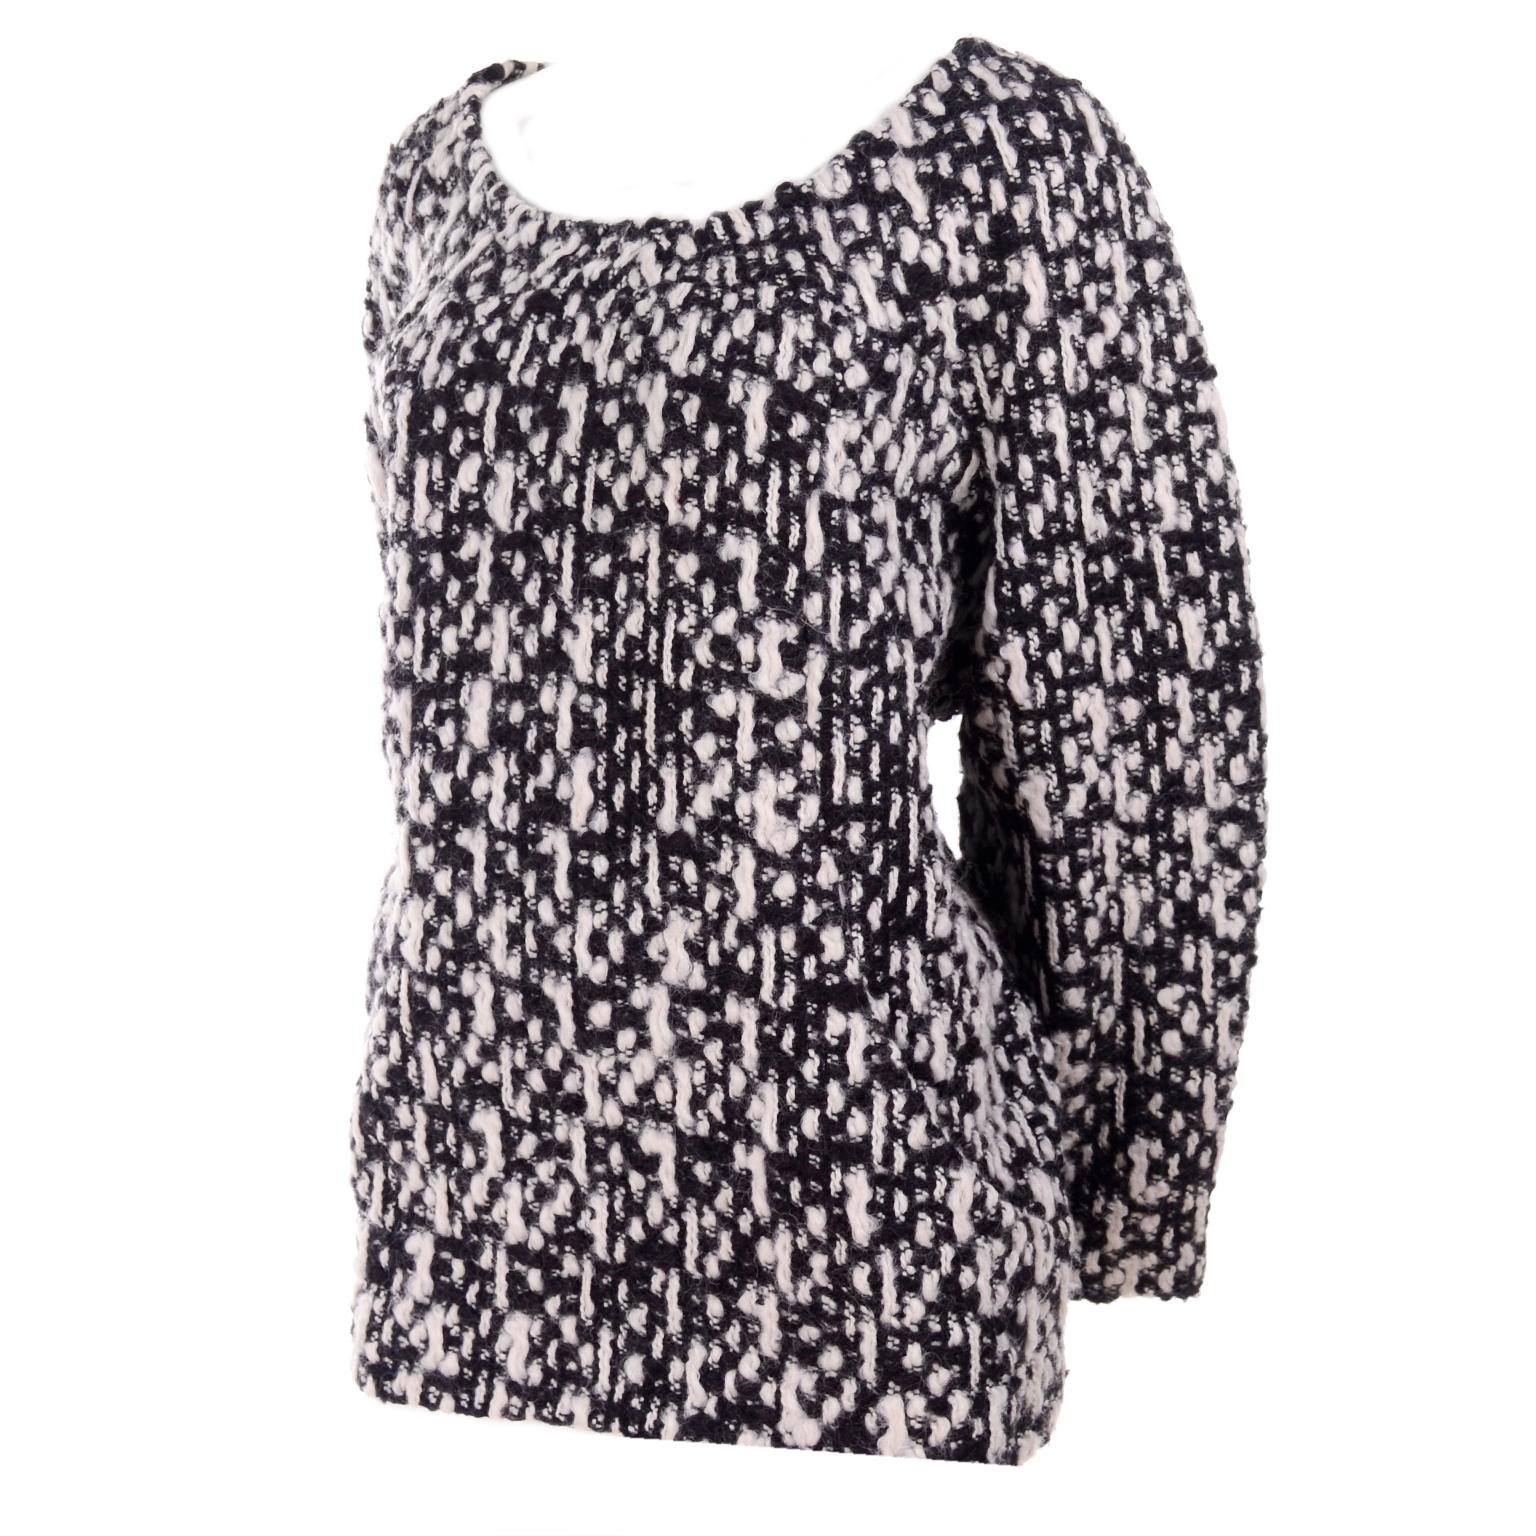 YSL Yves Saint Laurent Runway Sweater in Black and White Wool Tweed